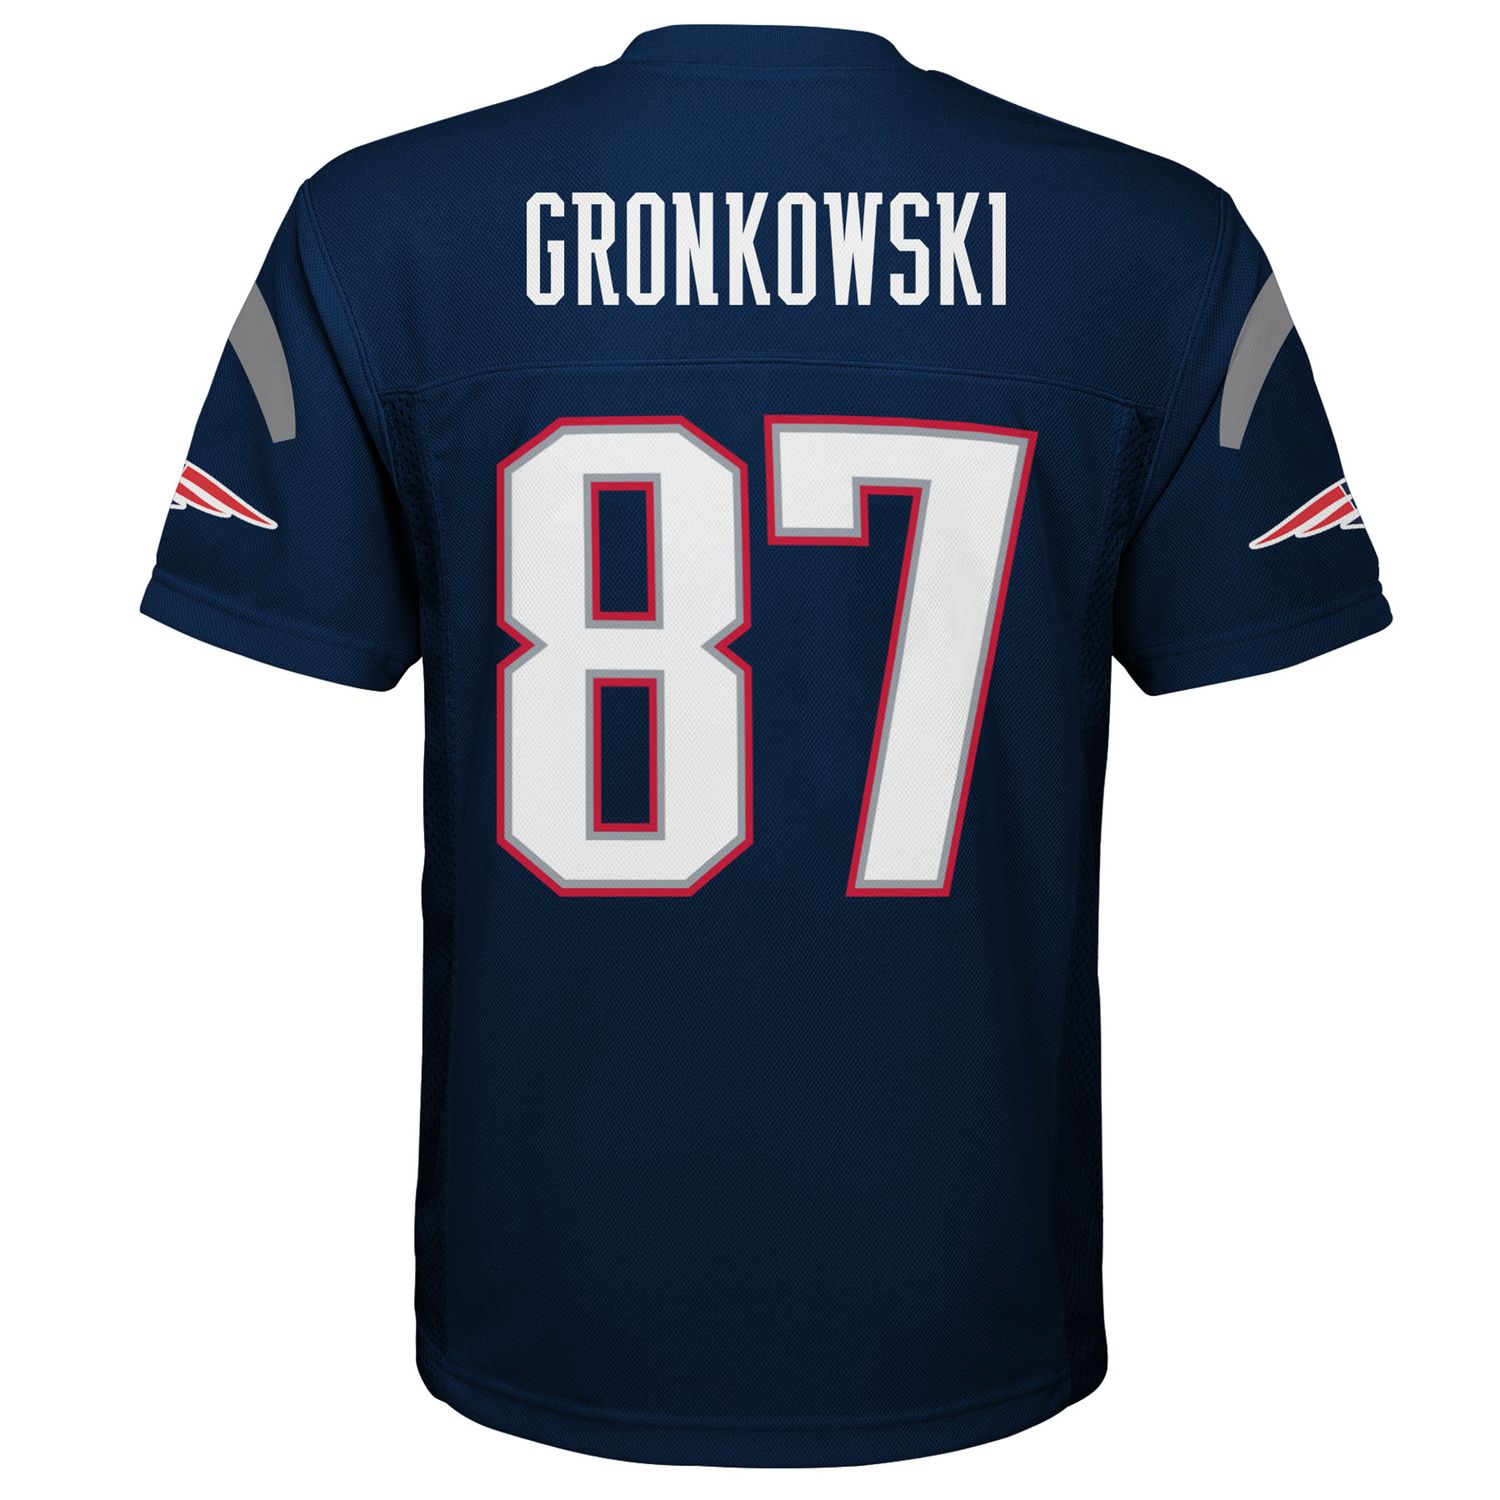 gronkowski patriots jersey